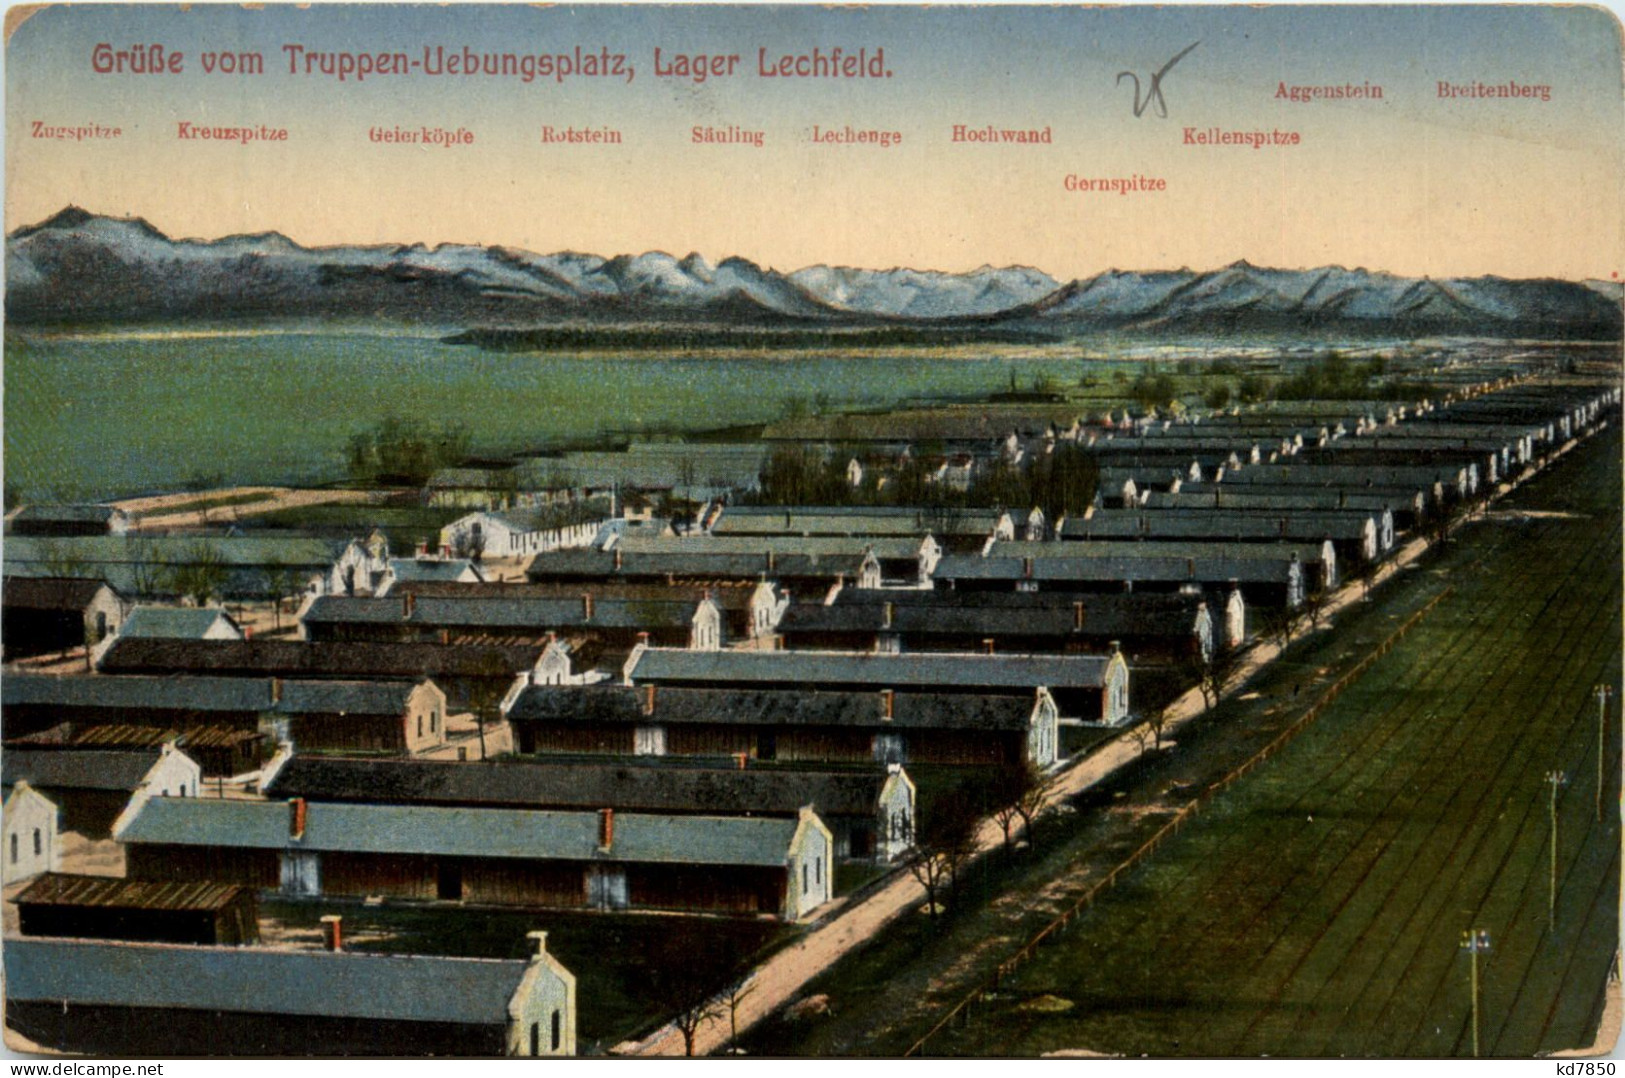 Lager-Lechfeld, Grüsse, Truppenübungsplatz, - Augsburg